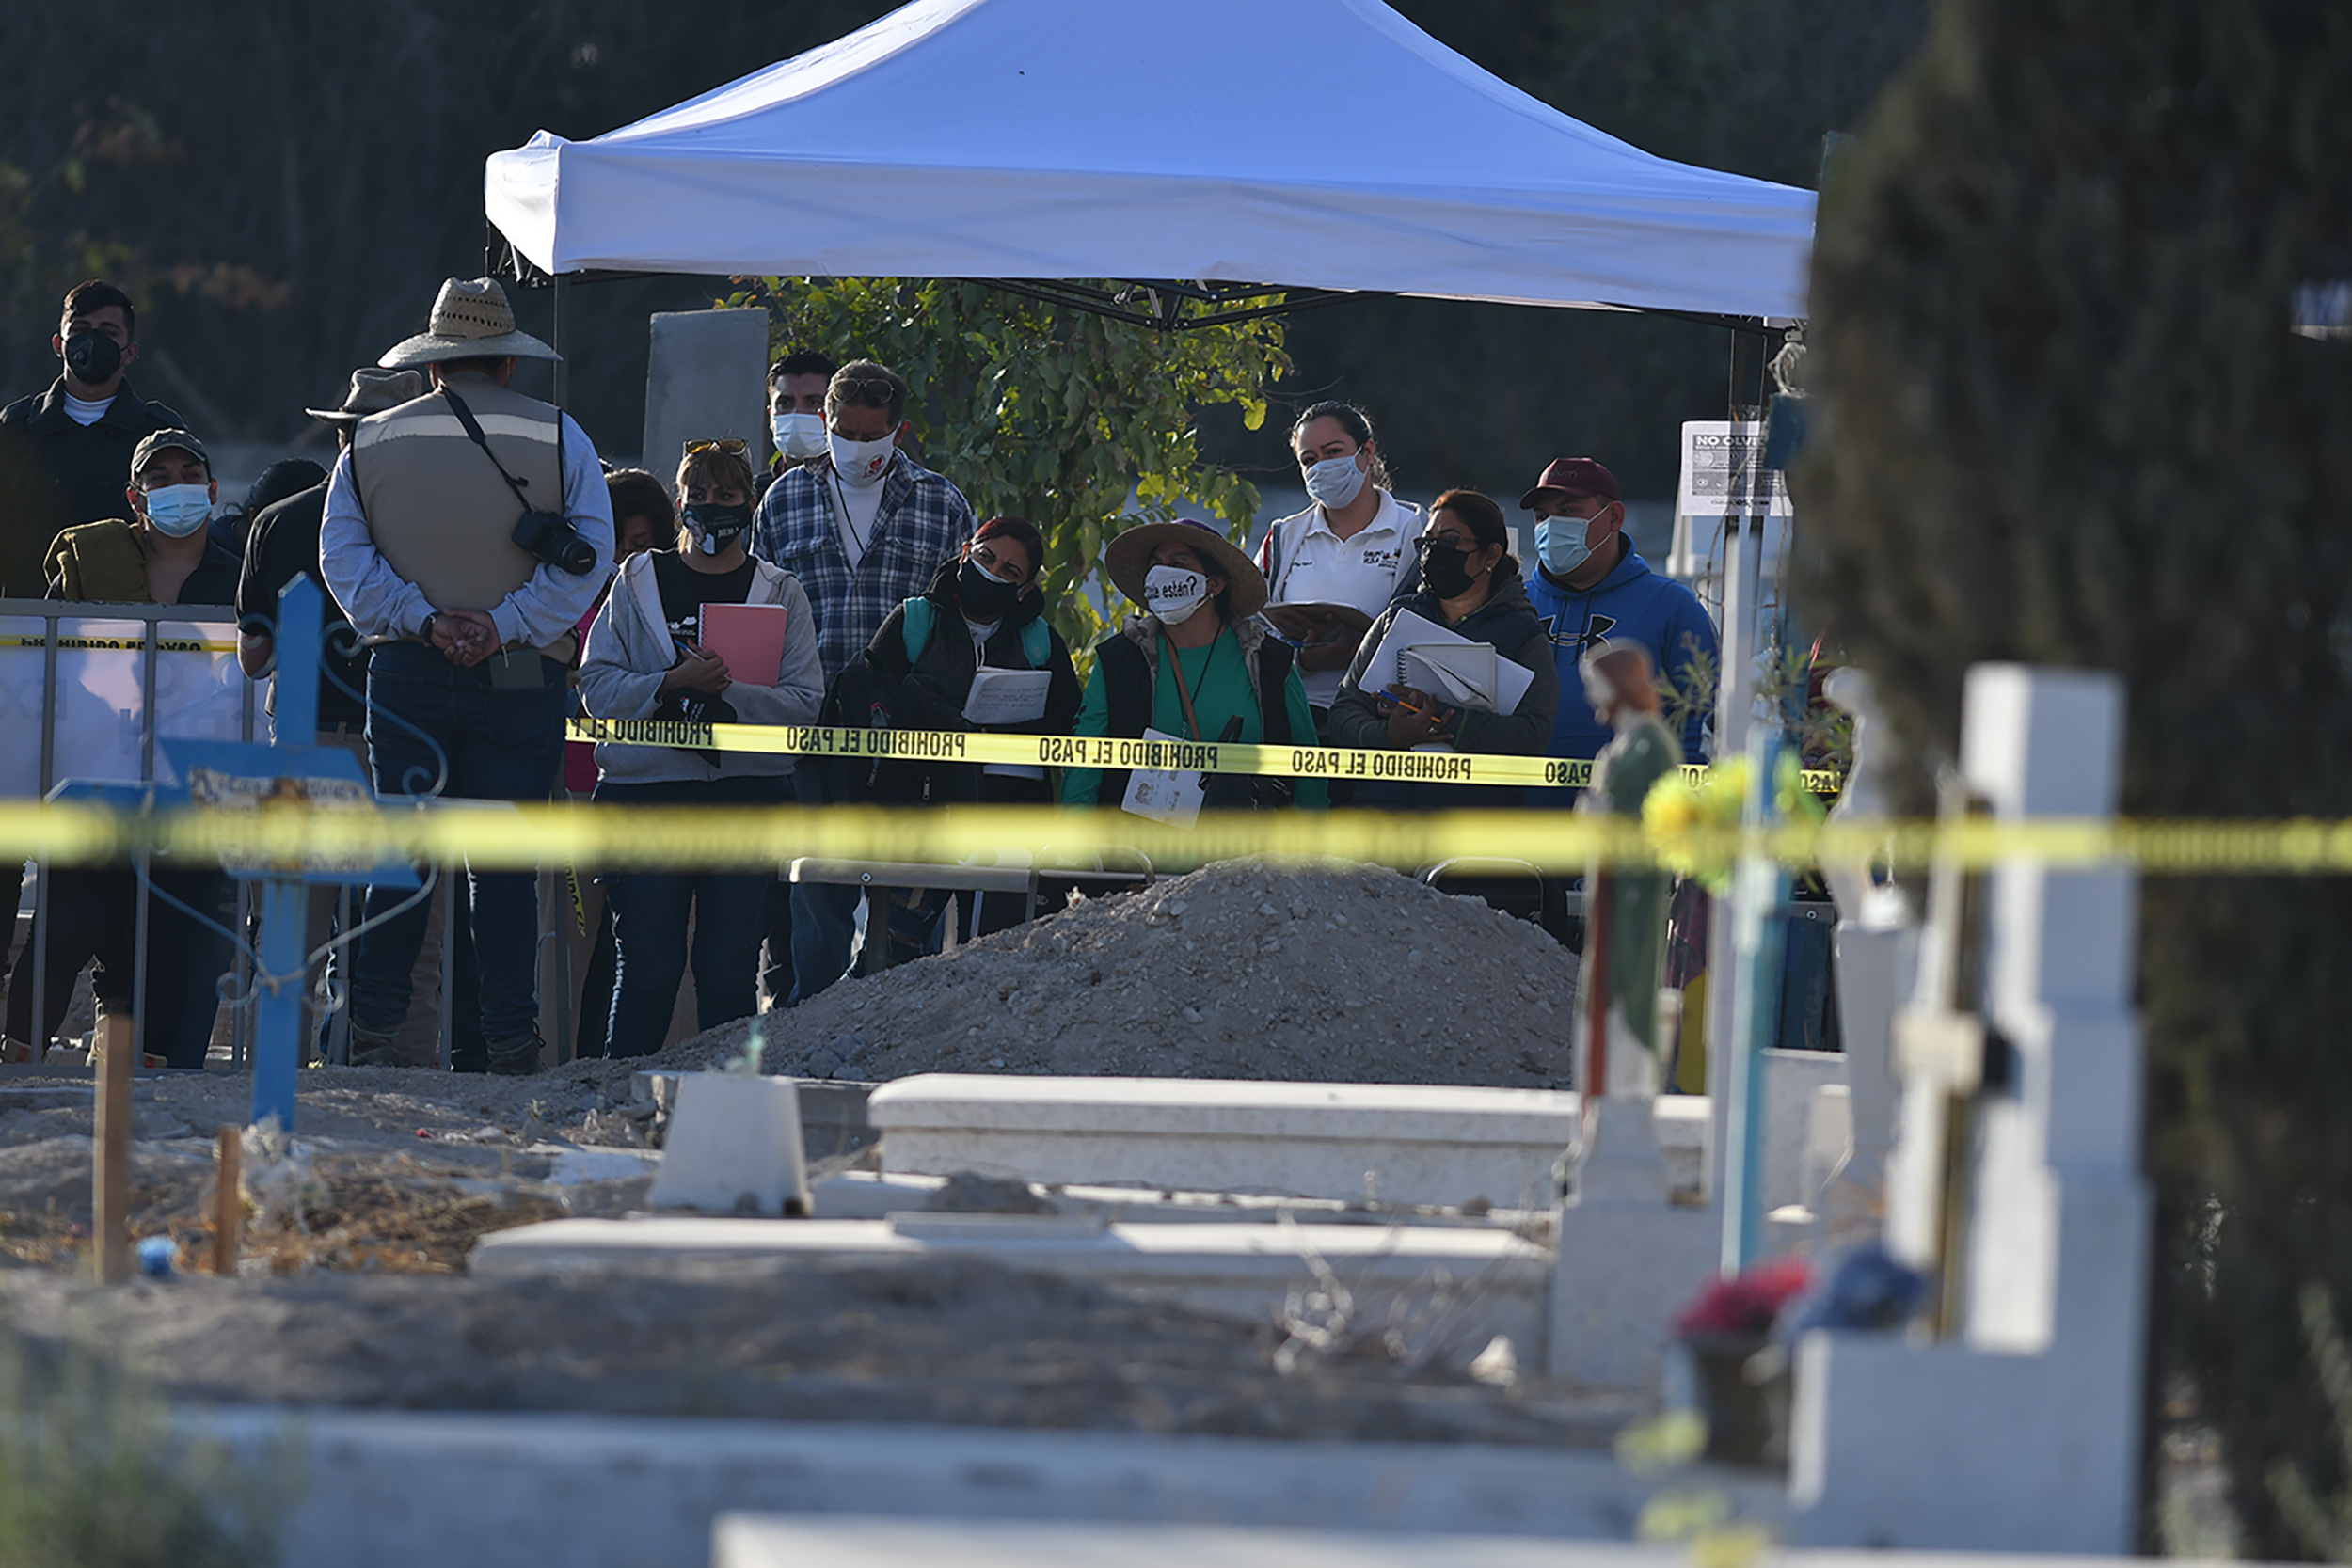 Madres y padres con un familiar desaparecido esperan que se identifiquen los cuerpos desenterrados del panteón 2 de Torreón. Quieren que regresen a casa y no se guarden en nichos. Foto: Francisco Rodríguez.